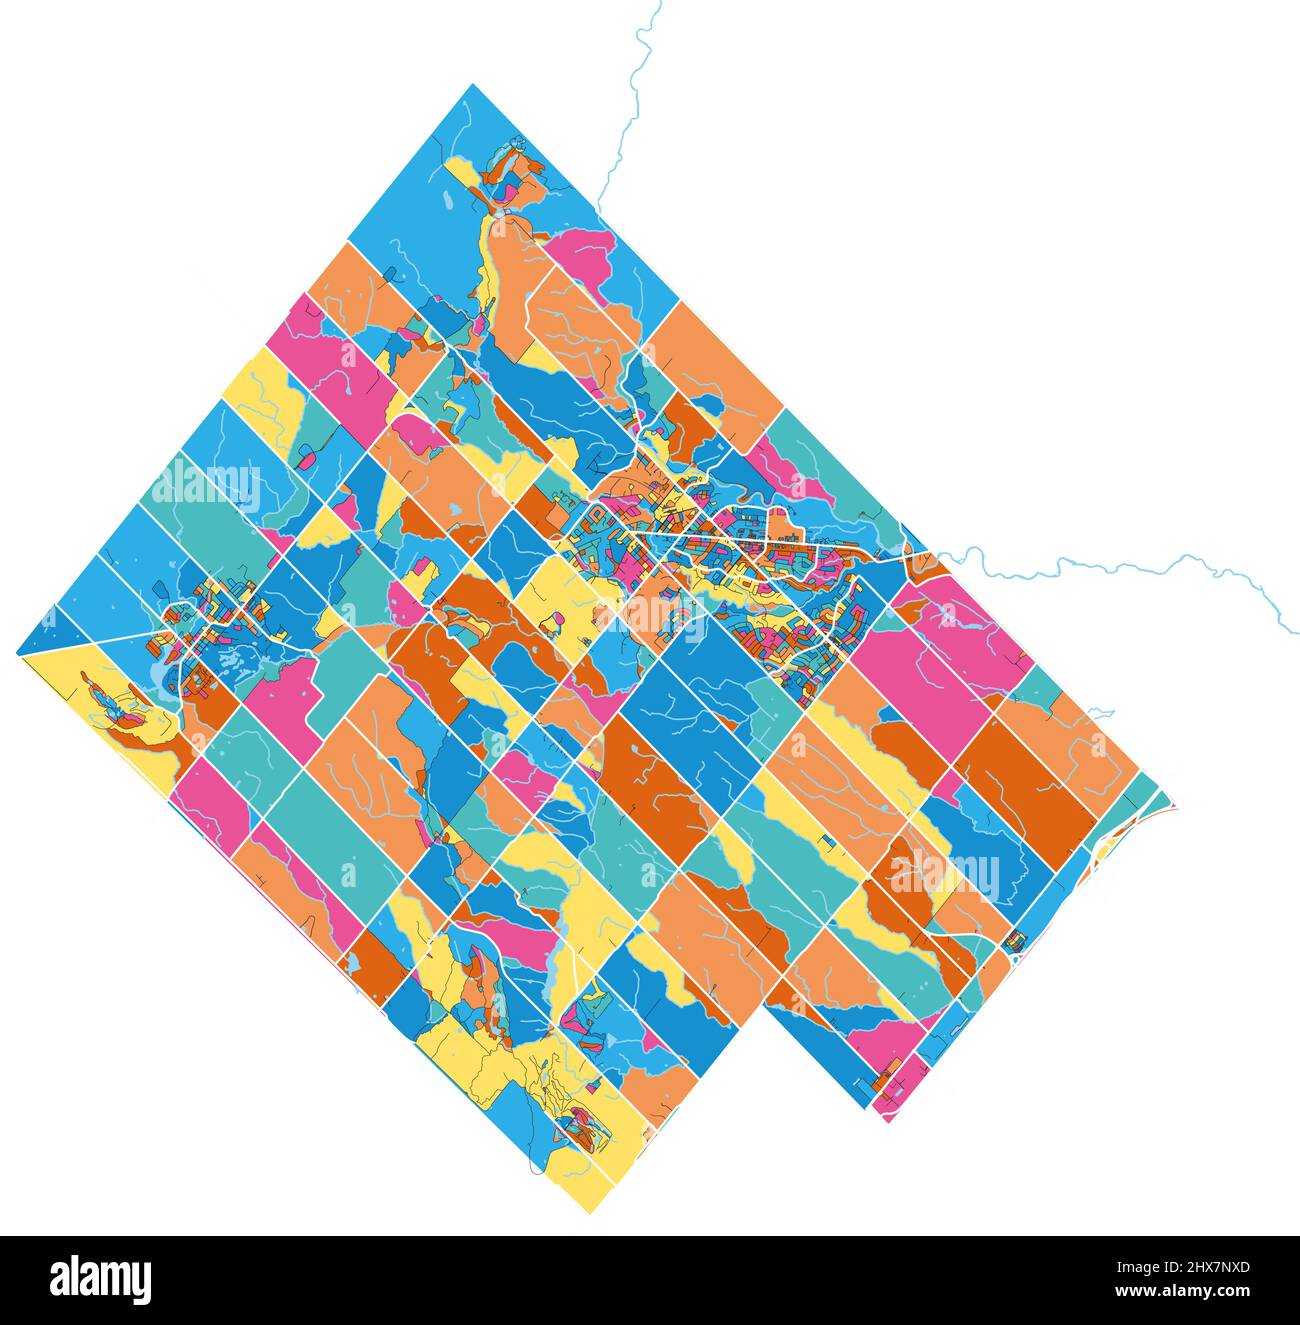 HaltonHills, Ontario, Kanada Bunte hochauflösende Vektorgrafik-Karte mit Stadtgrenzen. Weiße Umrisse für Hauptstraßen. Viele Details. Blaue Formen für Stock Vektor